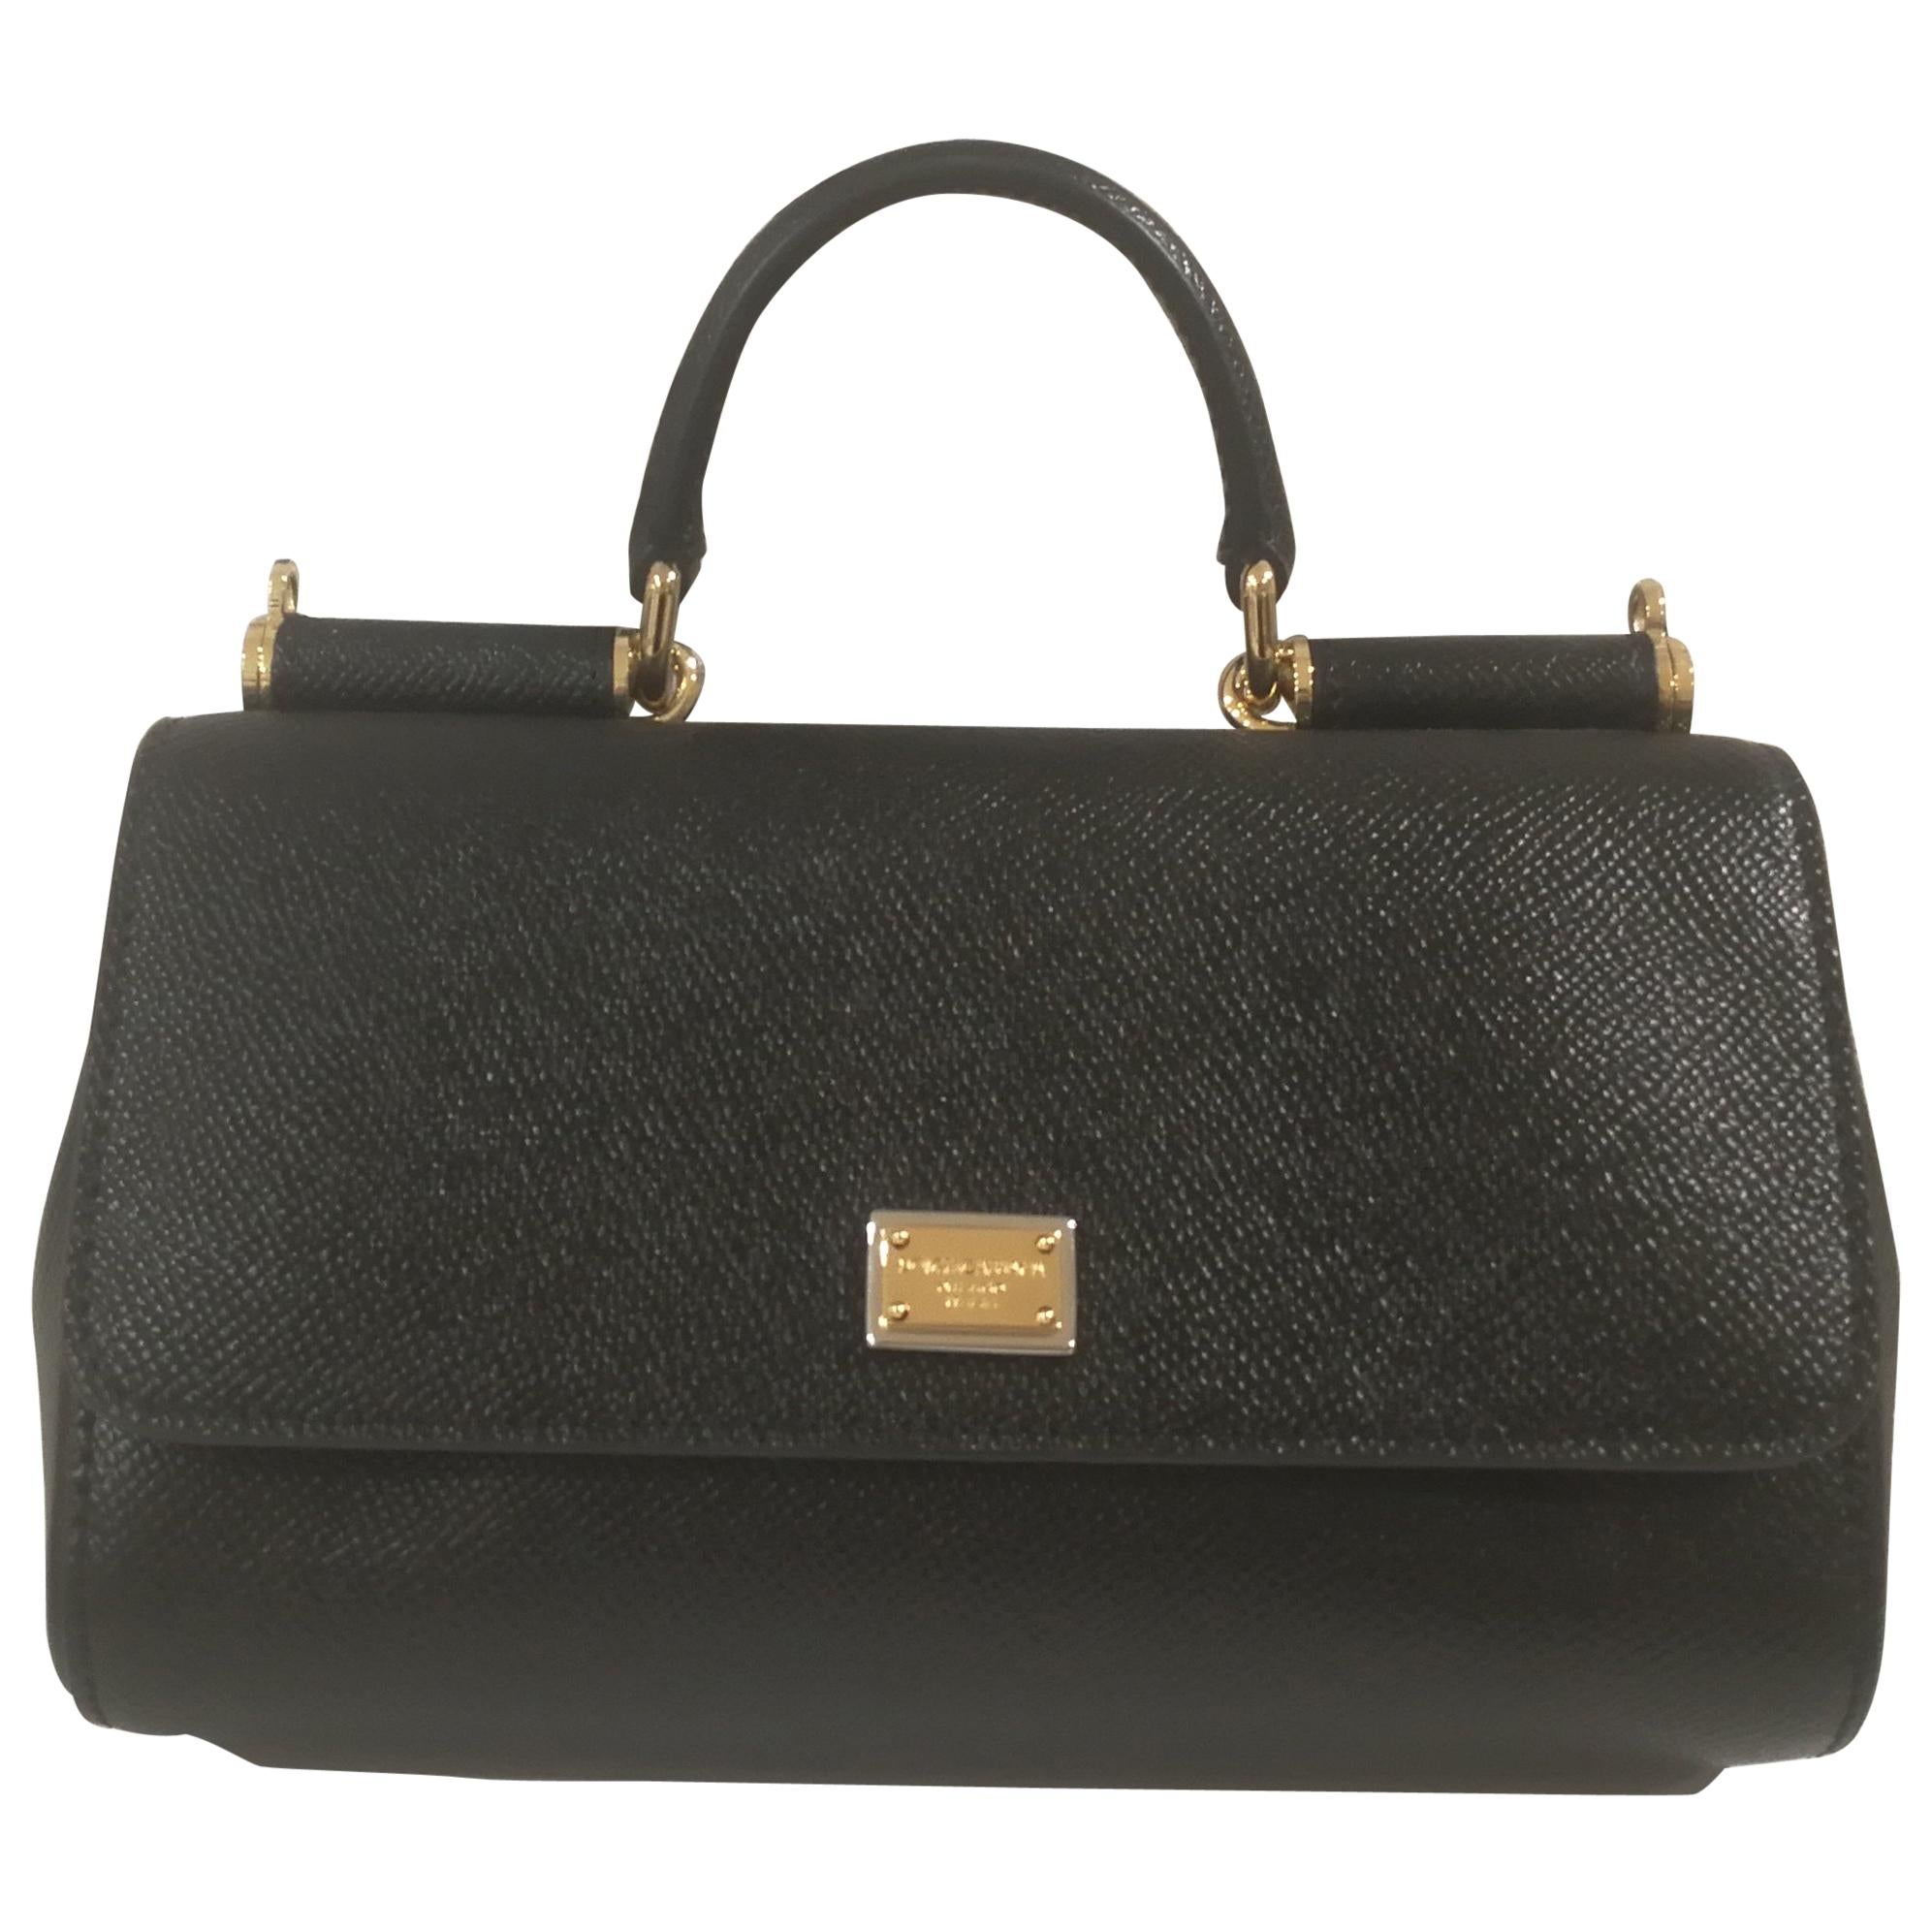 Dolce & Gabbana Black Leather Shoulder Bag NWOT